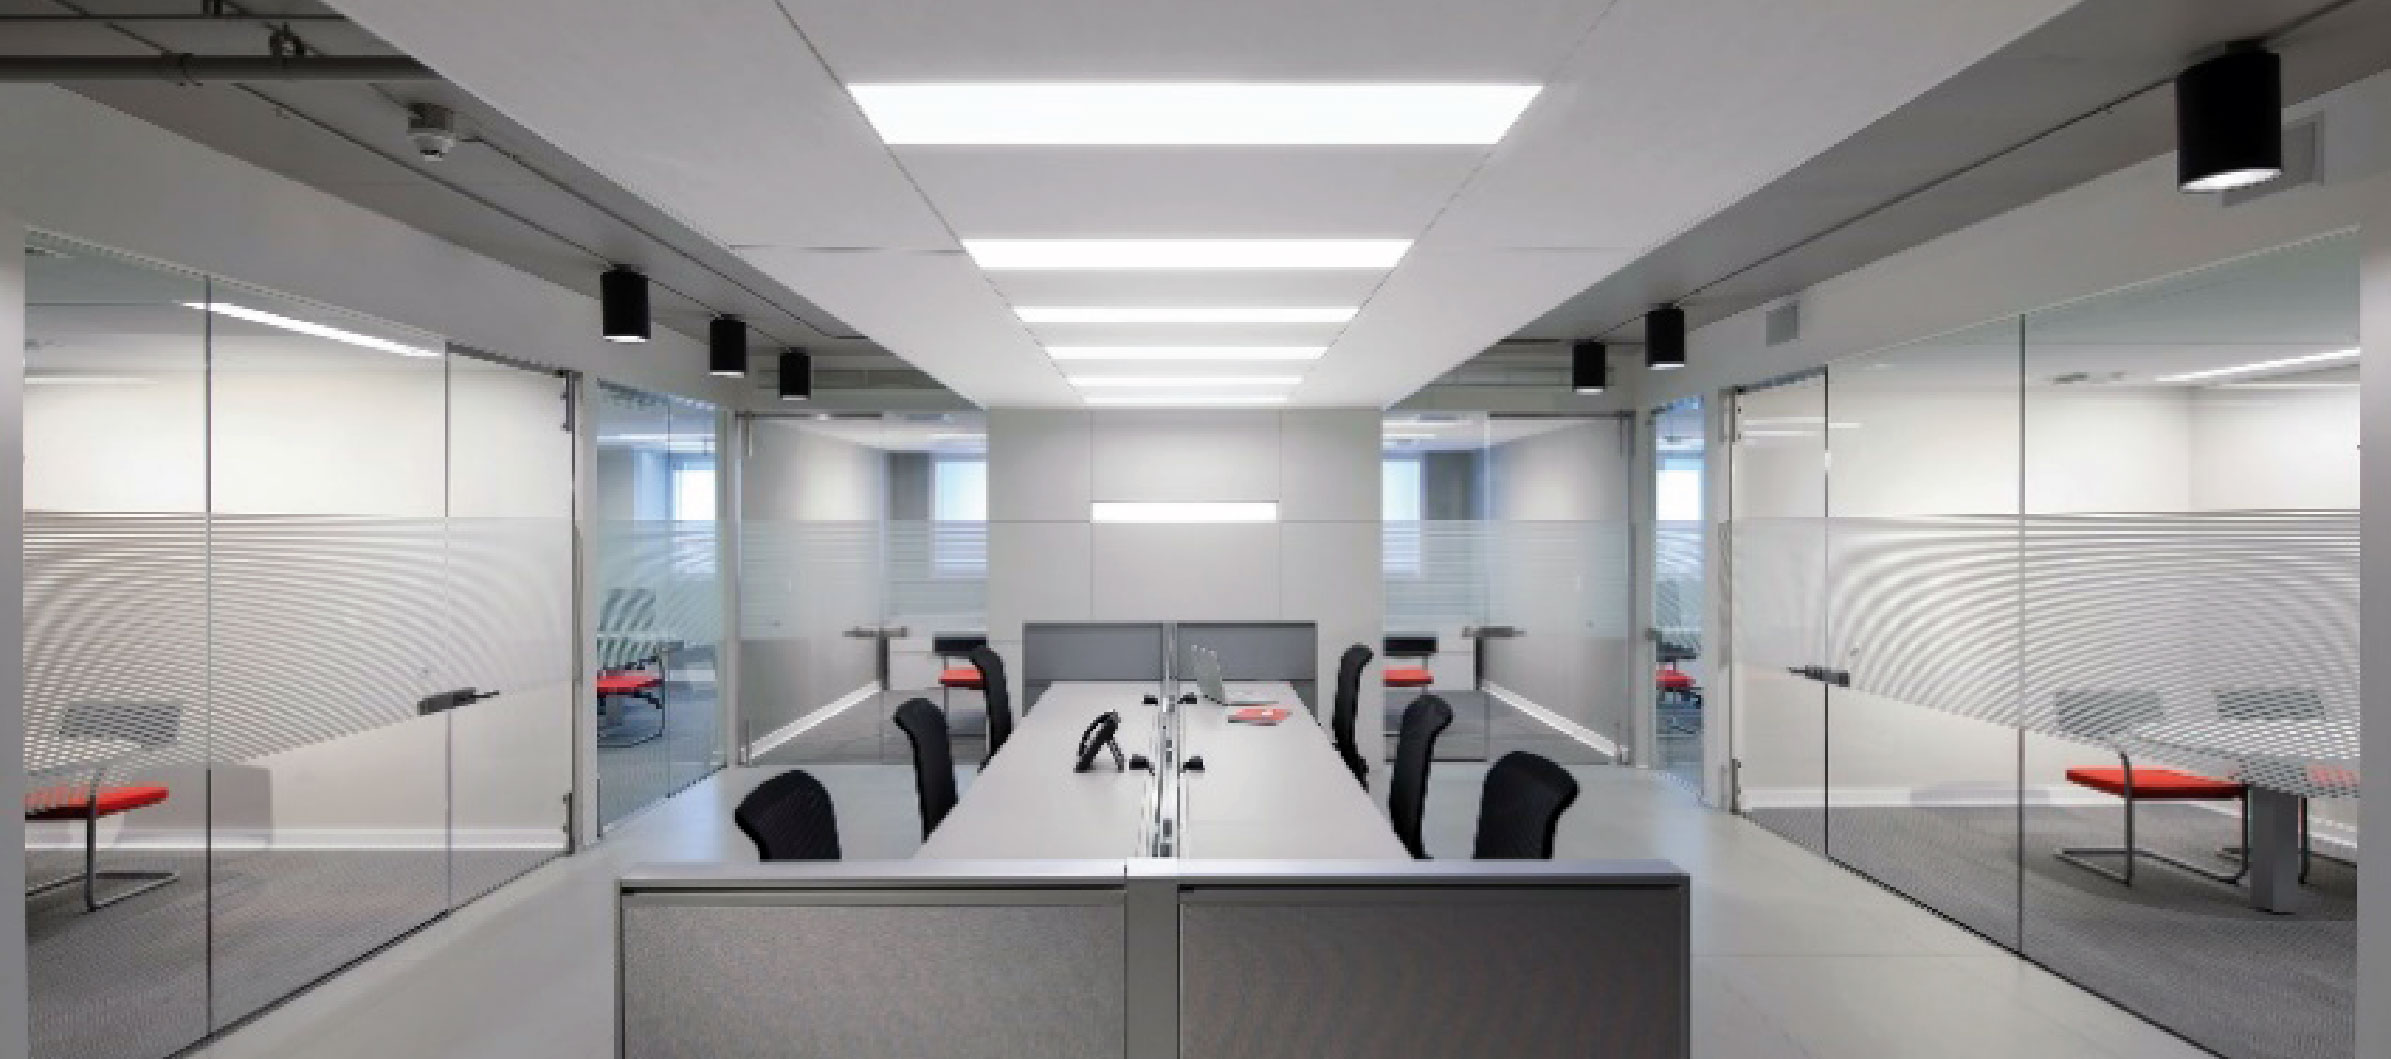 10 مورد از تأثیرات نورپردازی در محیط کار